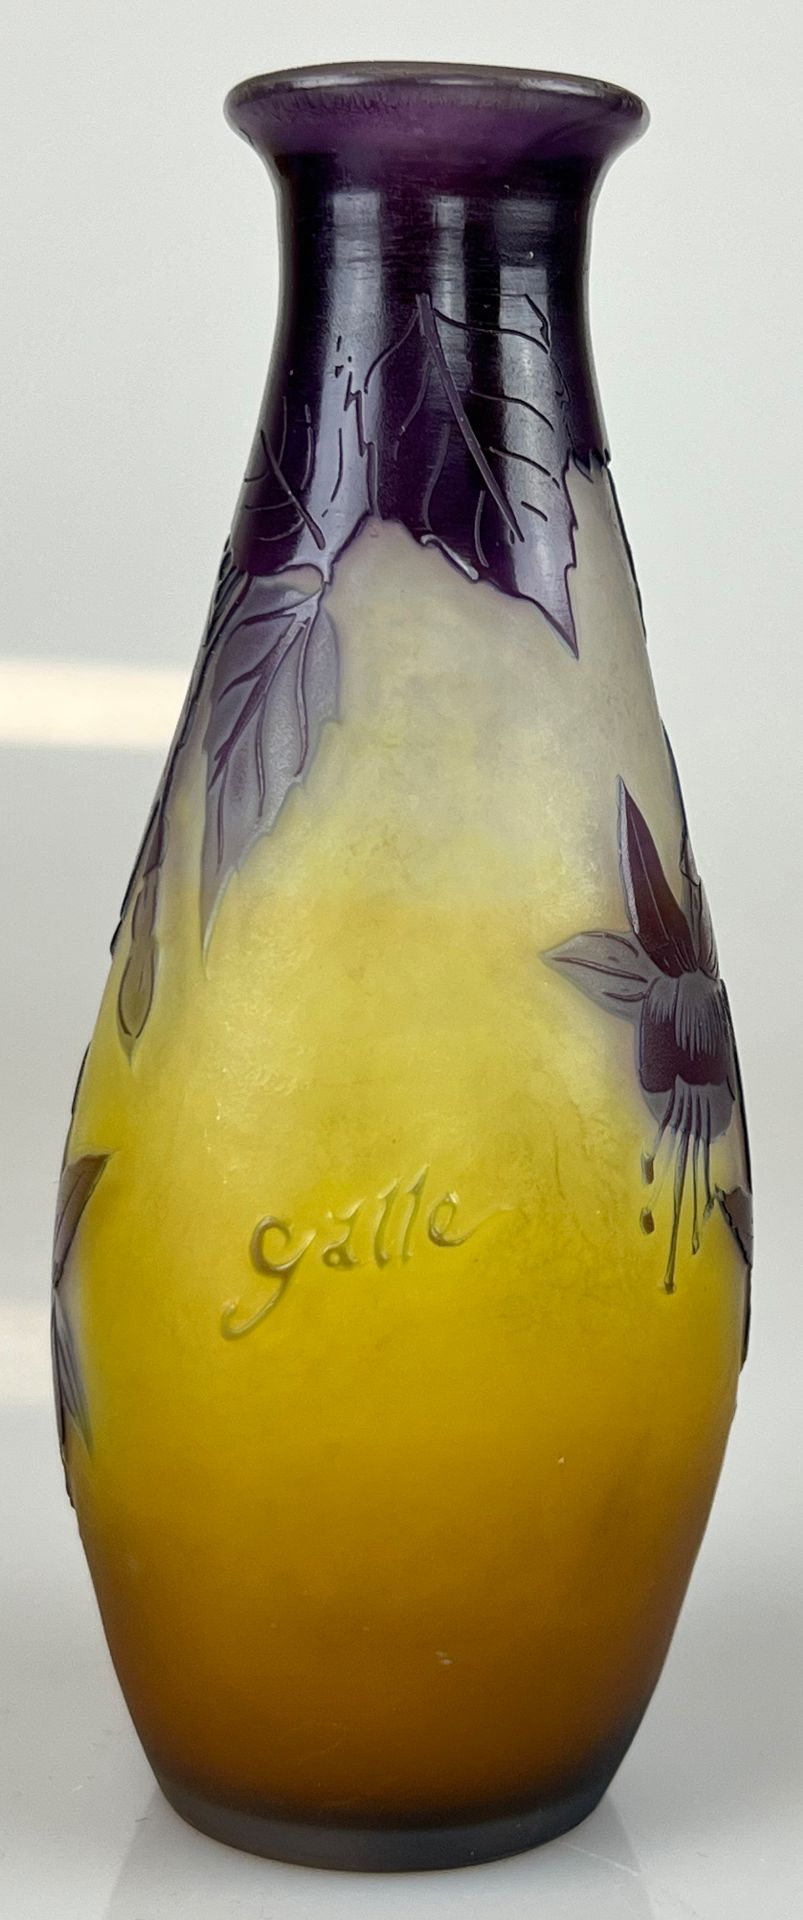 Émile GALLÉ (1846 - 1904). Vase mit Fuchsien. Um 1900. - Image 4 of 11